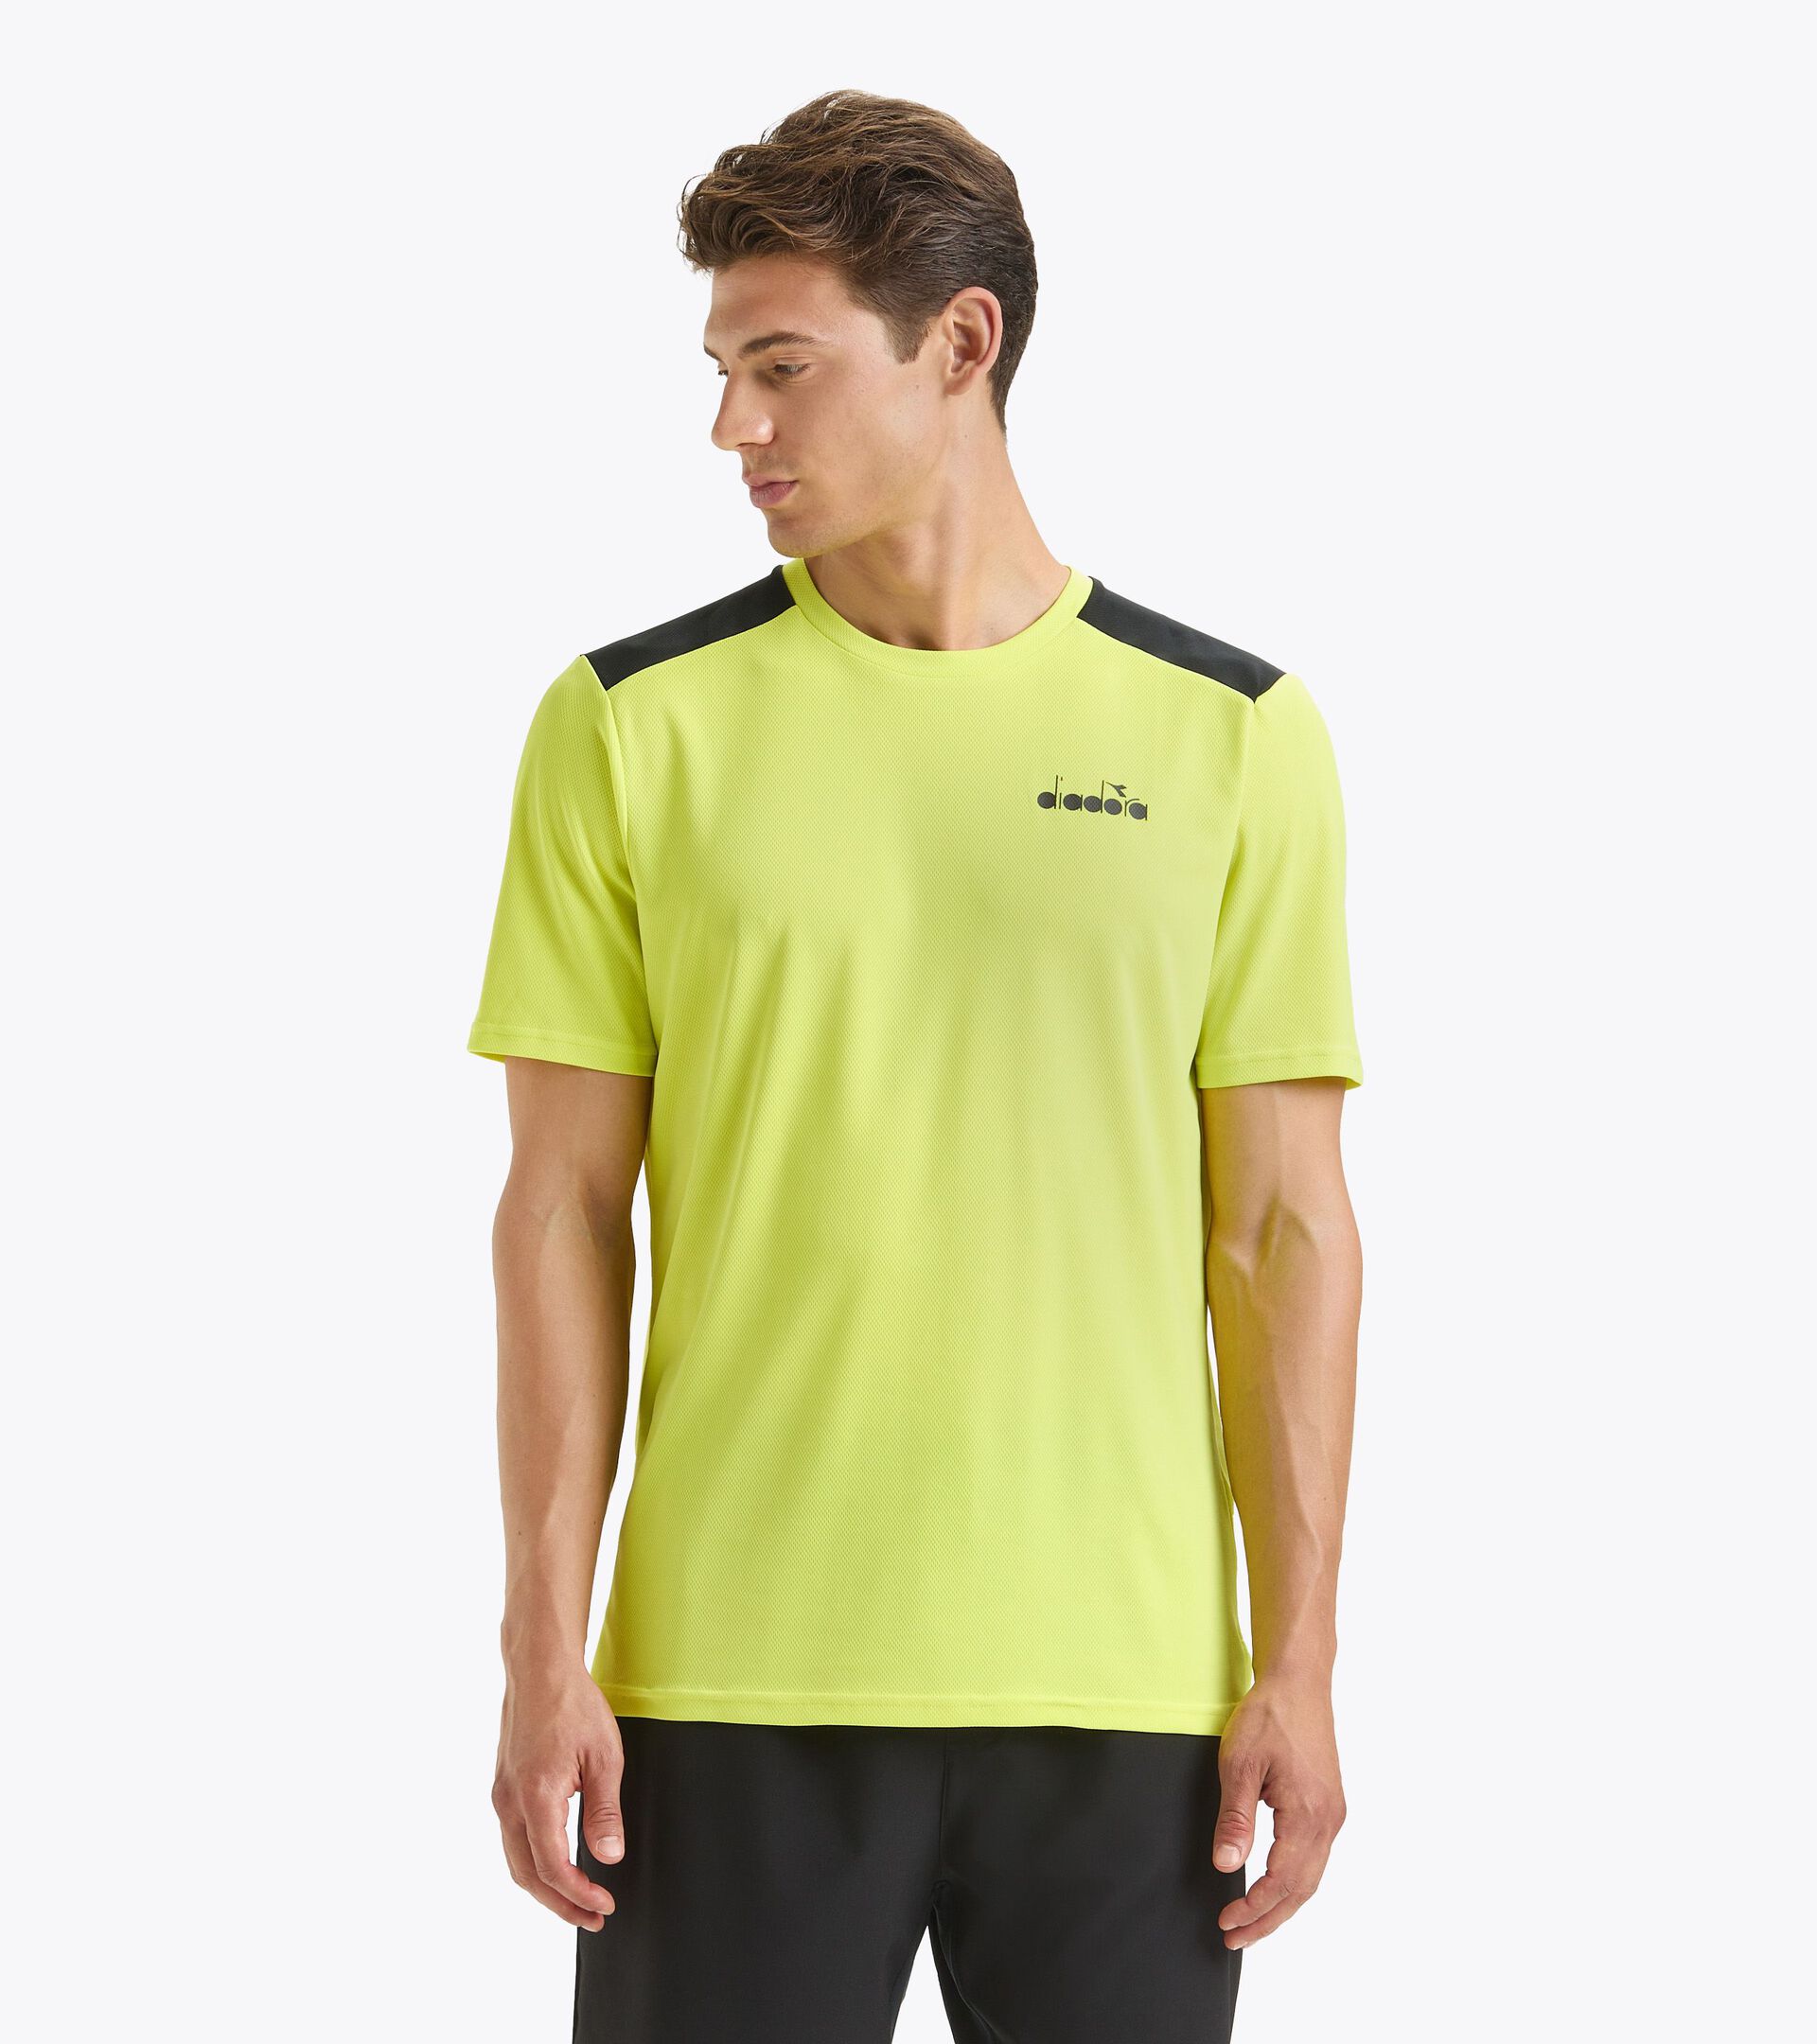 SS CORE T-SHIRT T Tennis shirt - Men - Diadora Online Store US